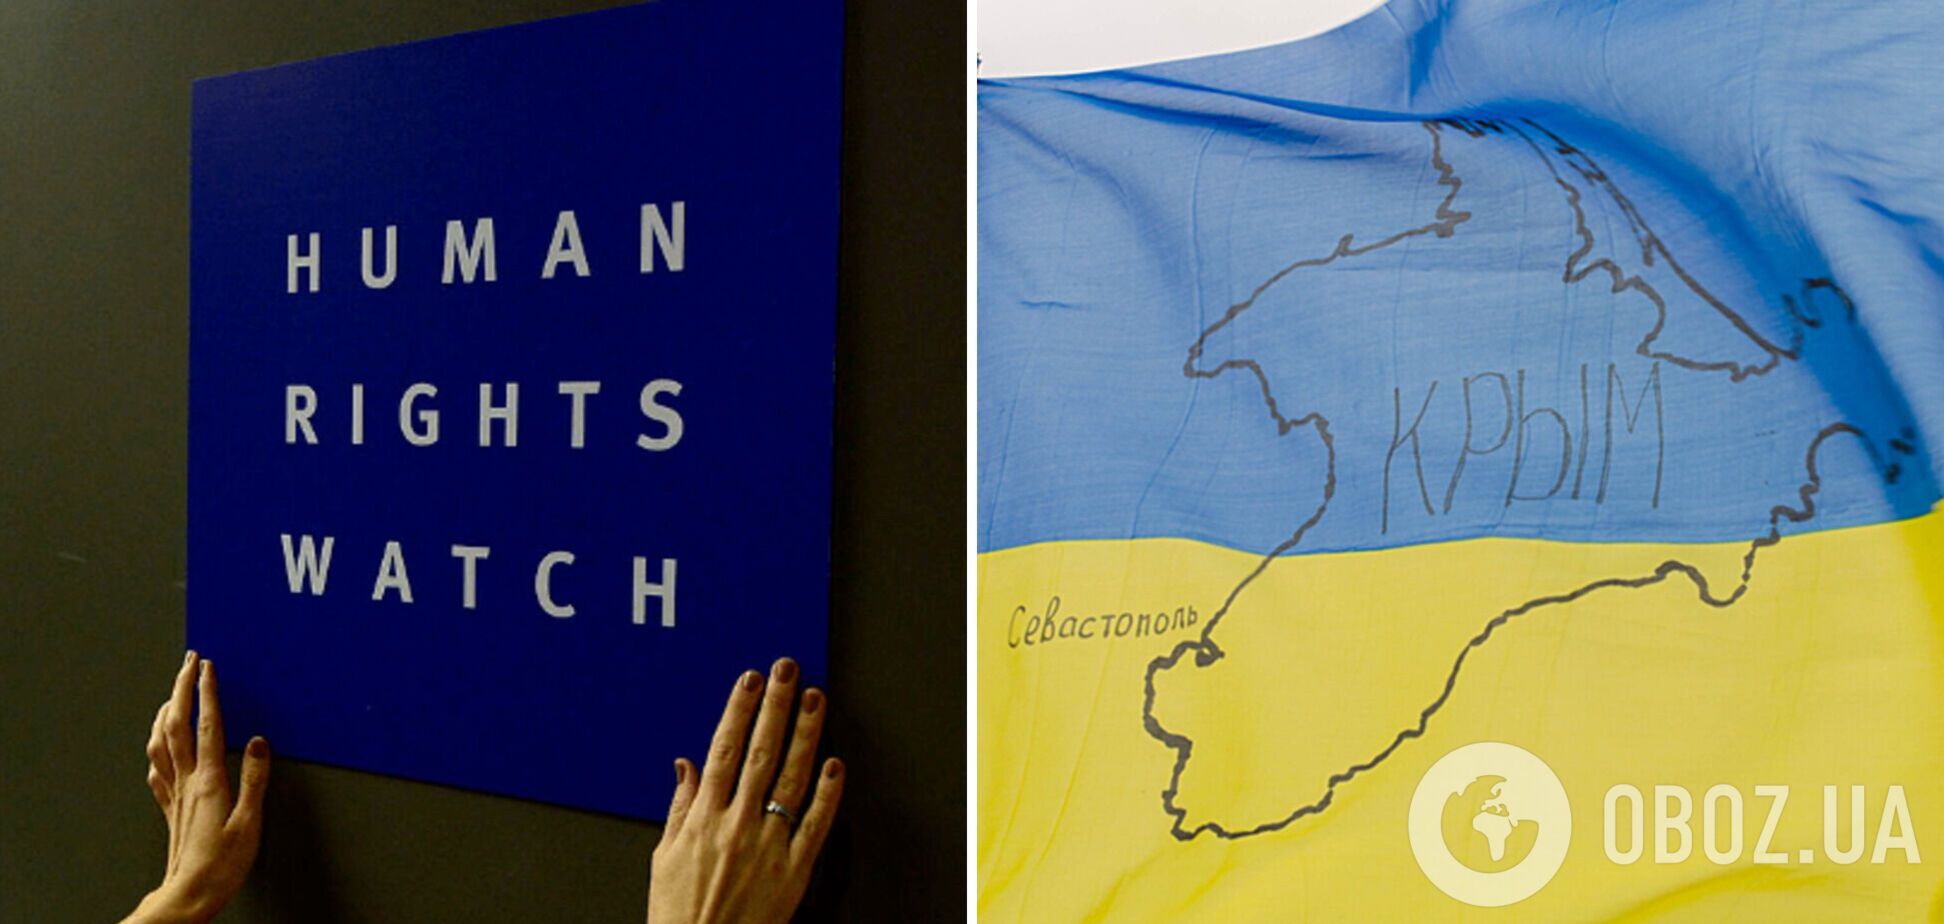 Правозахисники з Human Rights Watch проілюстрували картою України без Криму скандальний звіт про застосування протипіхотних мін. Фото 